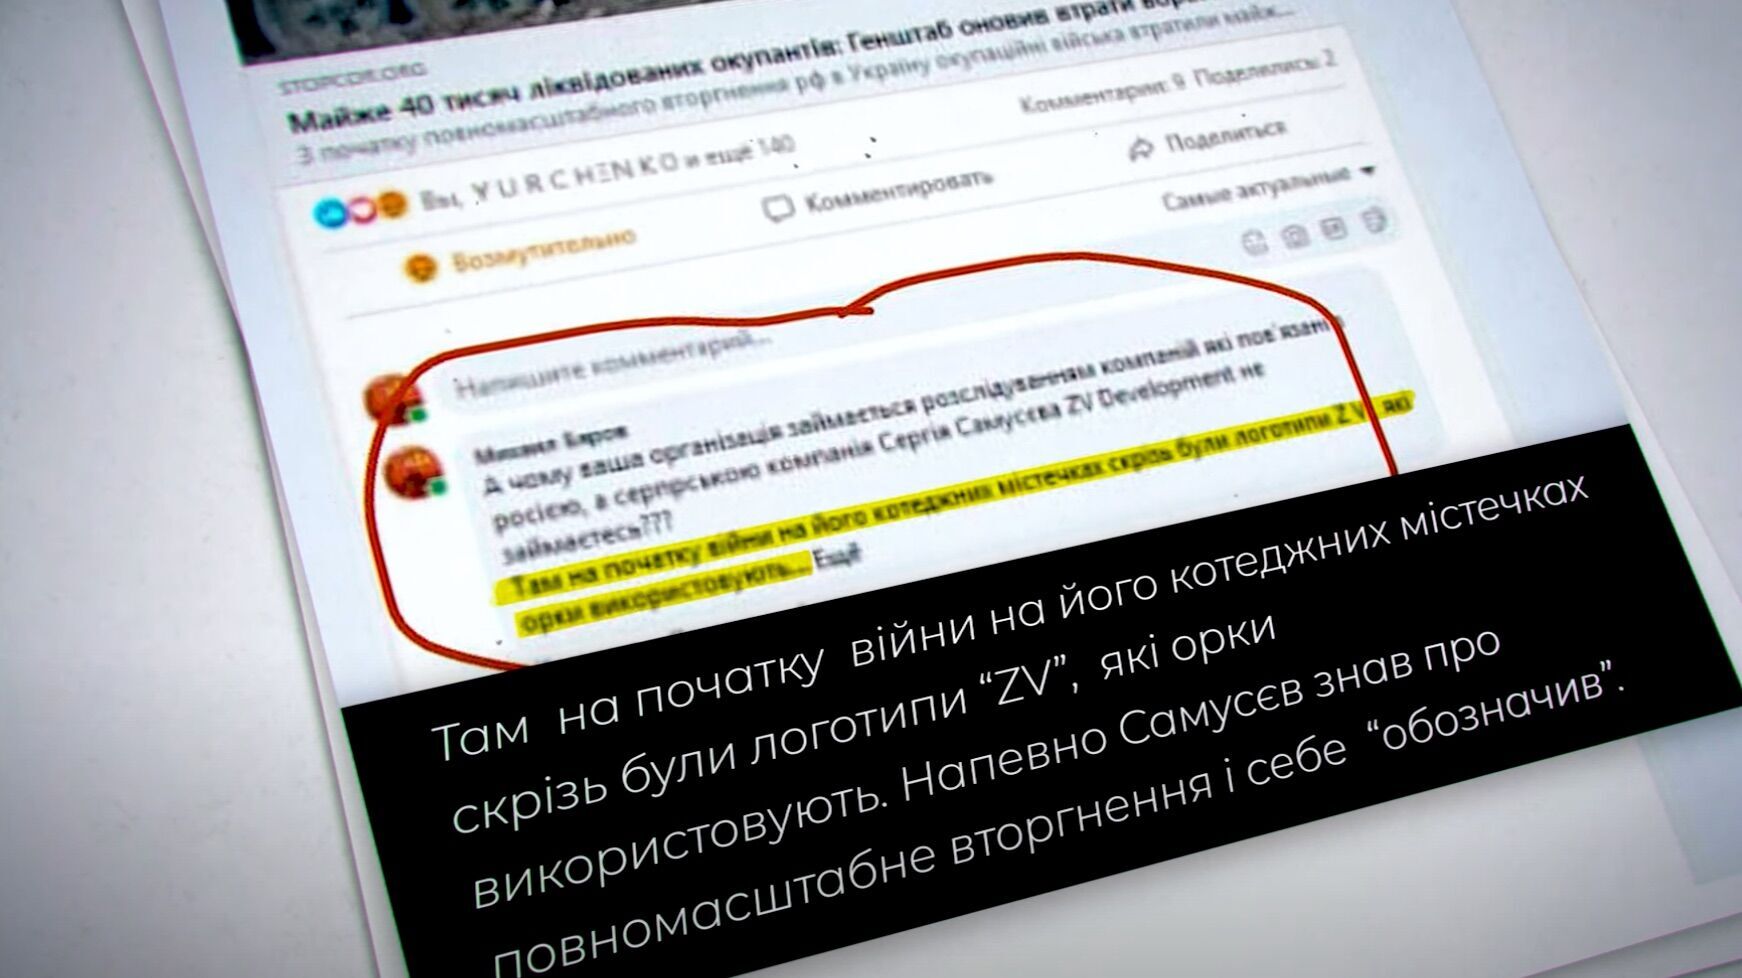 Предполагают, что символами ZV Самусев ''промаркировал'' свои объекты в Киевской области.